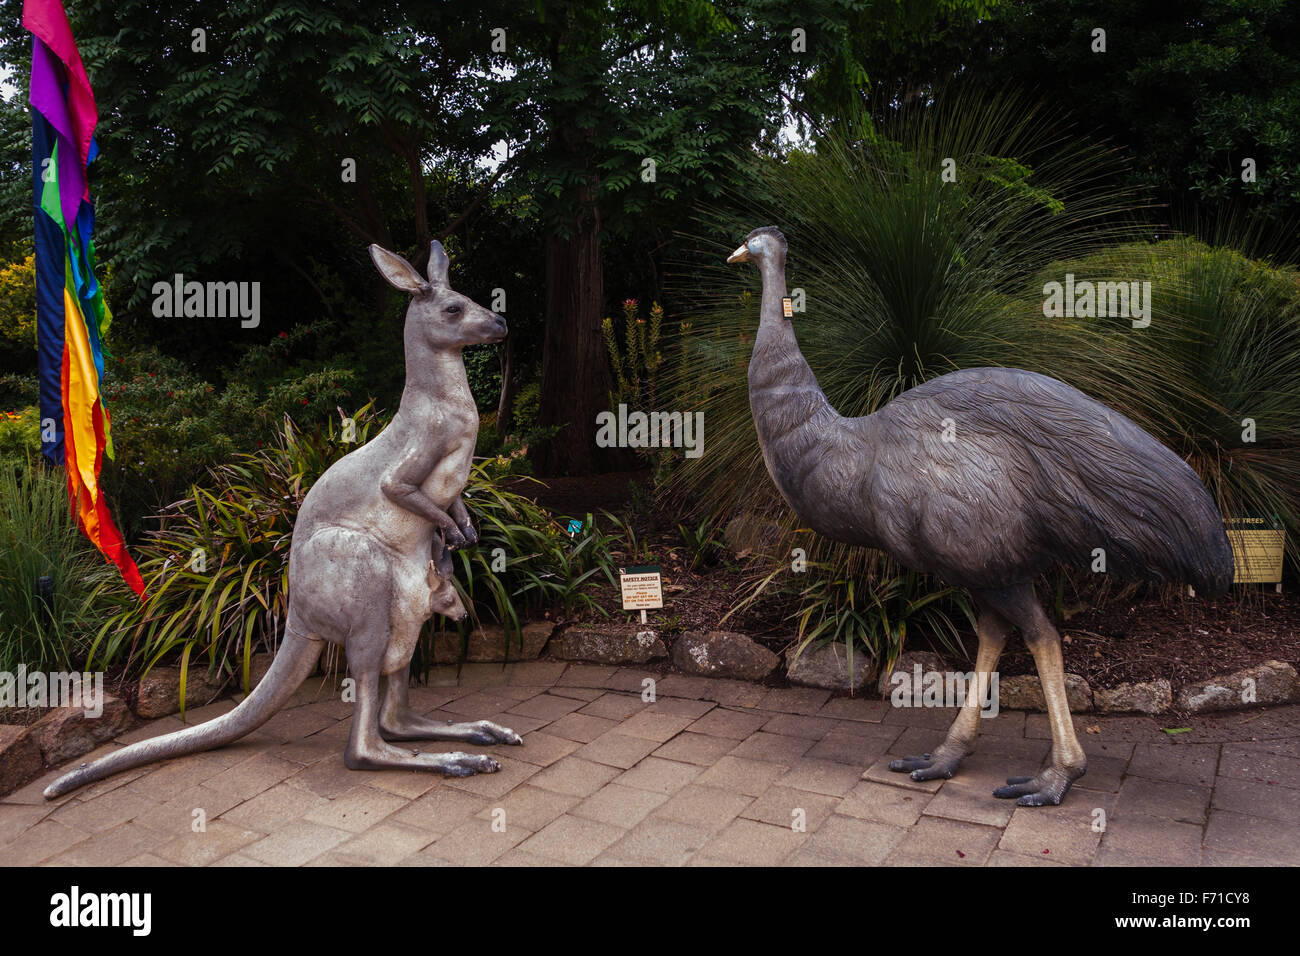 Kangaroo Emu statue sculptures Stock Photo